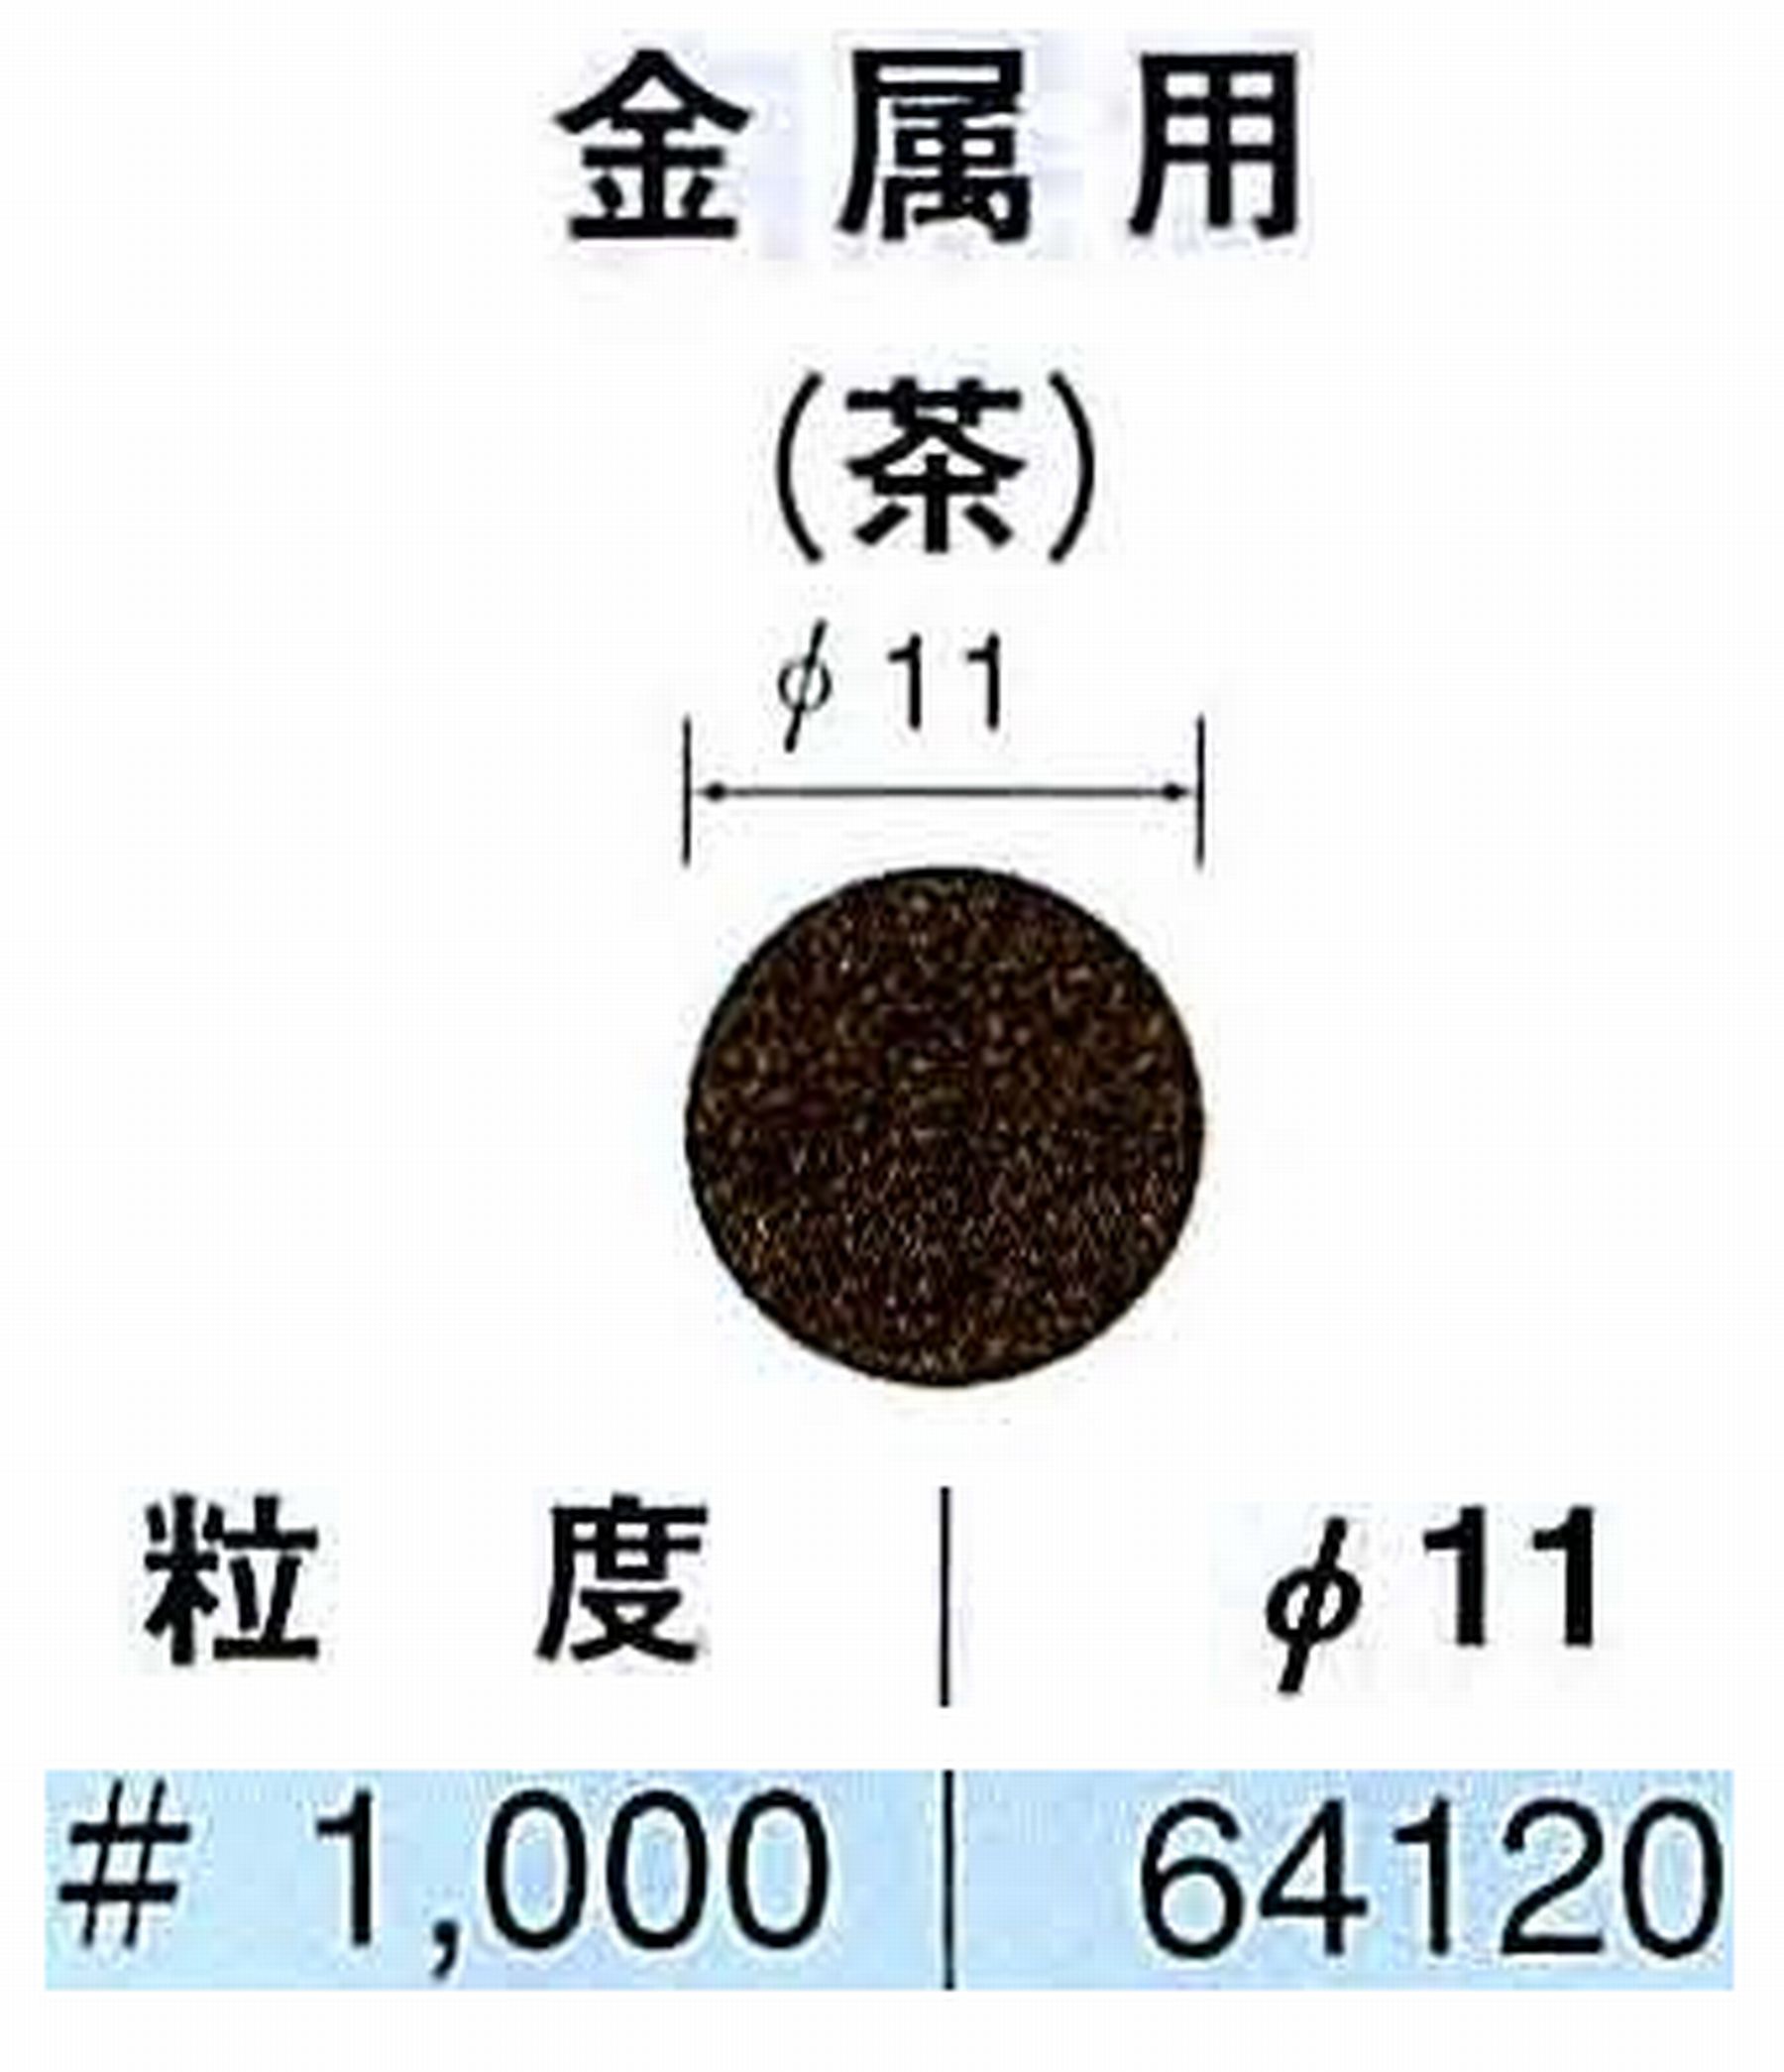 ナカニシ/NAKANISHI アングルグラインダ(電動・エアー) アングルアタッチメント専用工具 サンドペーパーディスク(布基材タイプ)裏面のり処理 64120